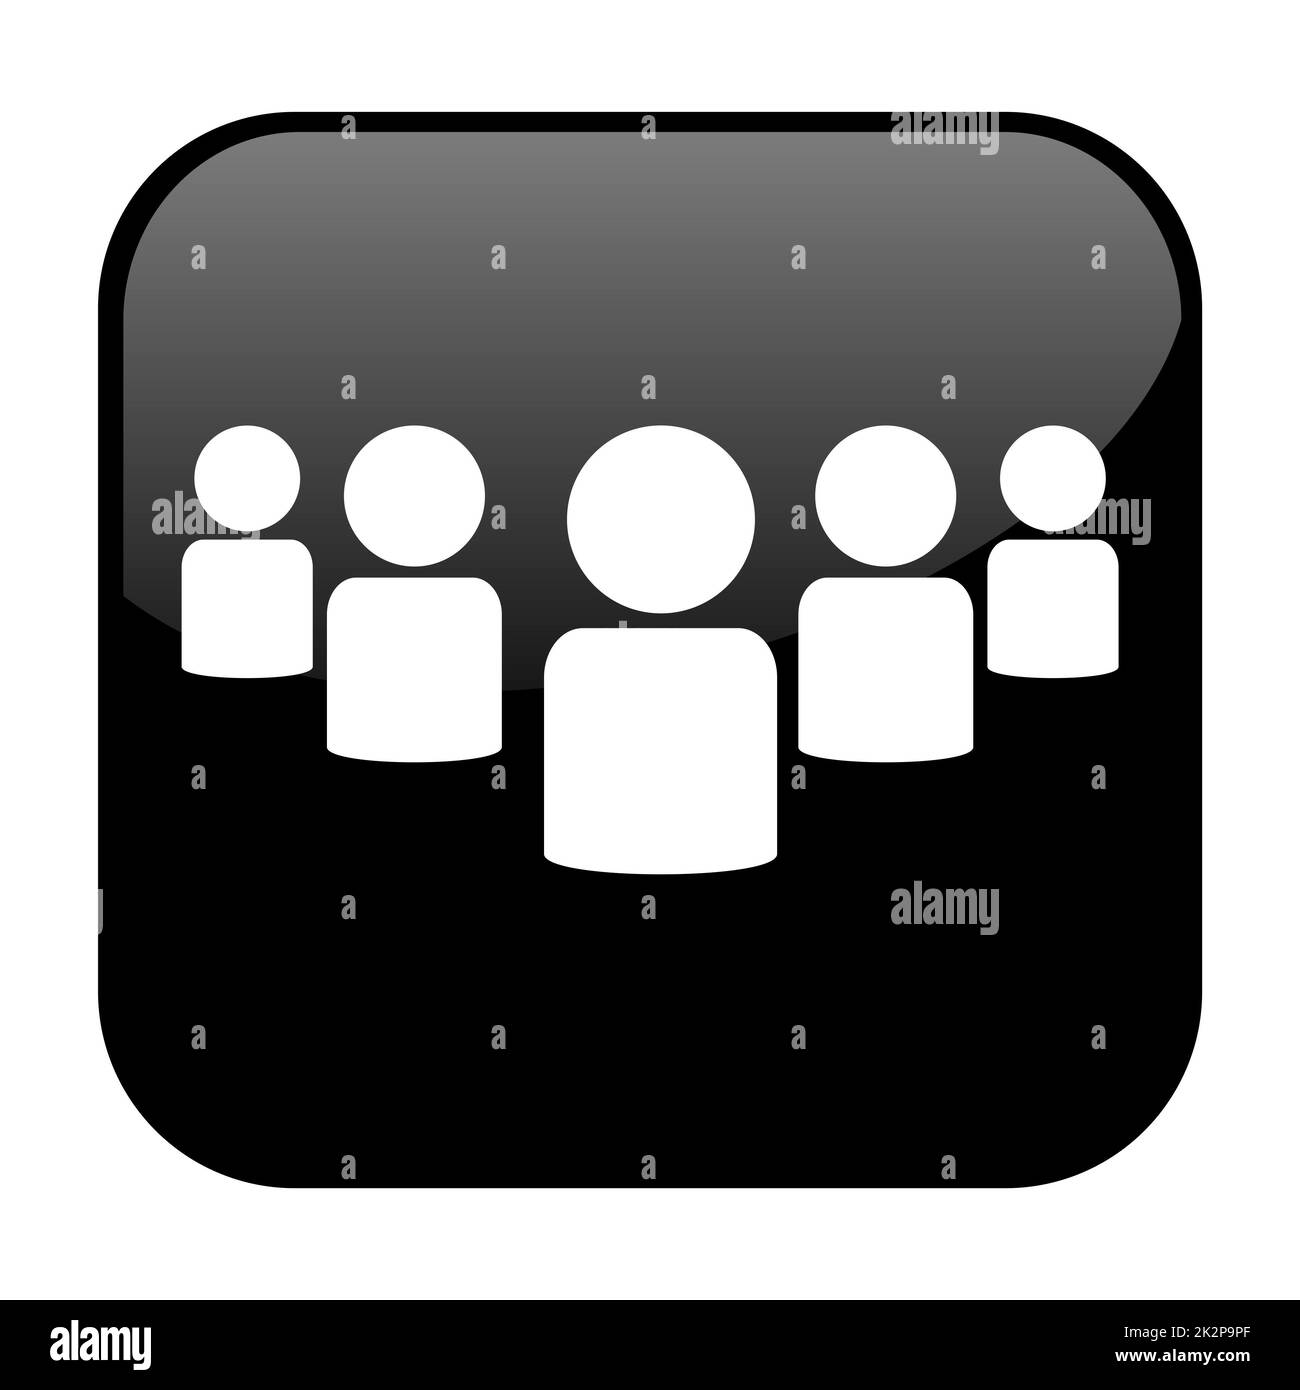 Schaltfläche mit schwarzer Farbe und weißem Symbol, das die Community-Gruppe anzeigt Stockfoto